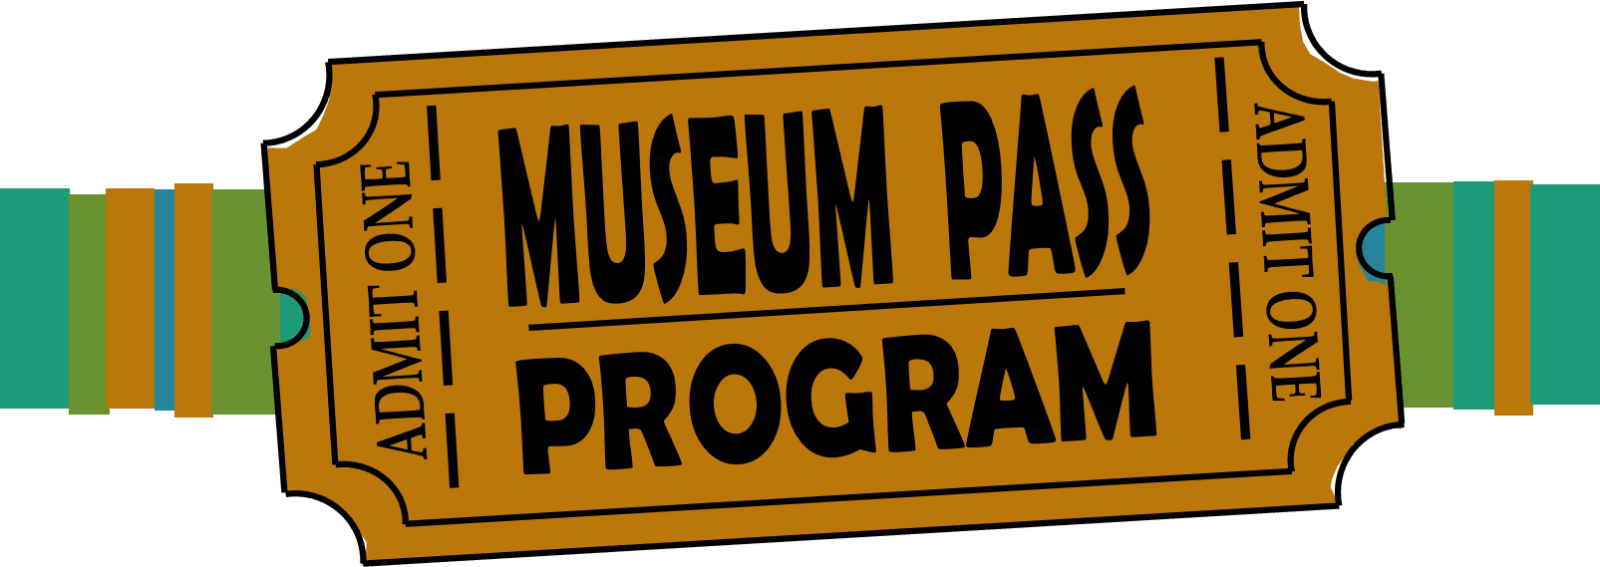 museum clipart museum ticket